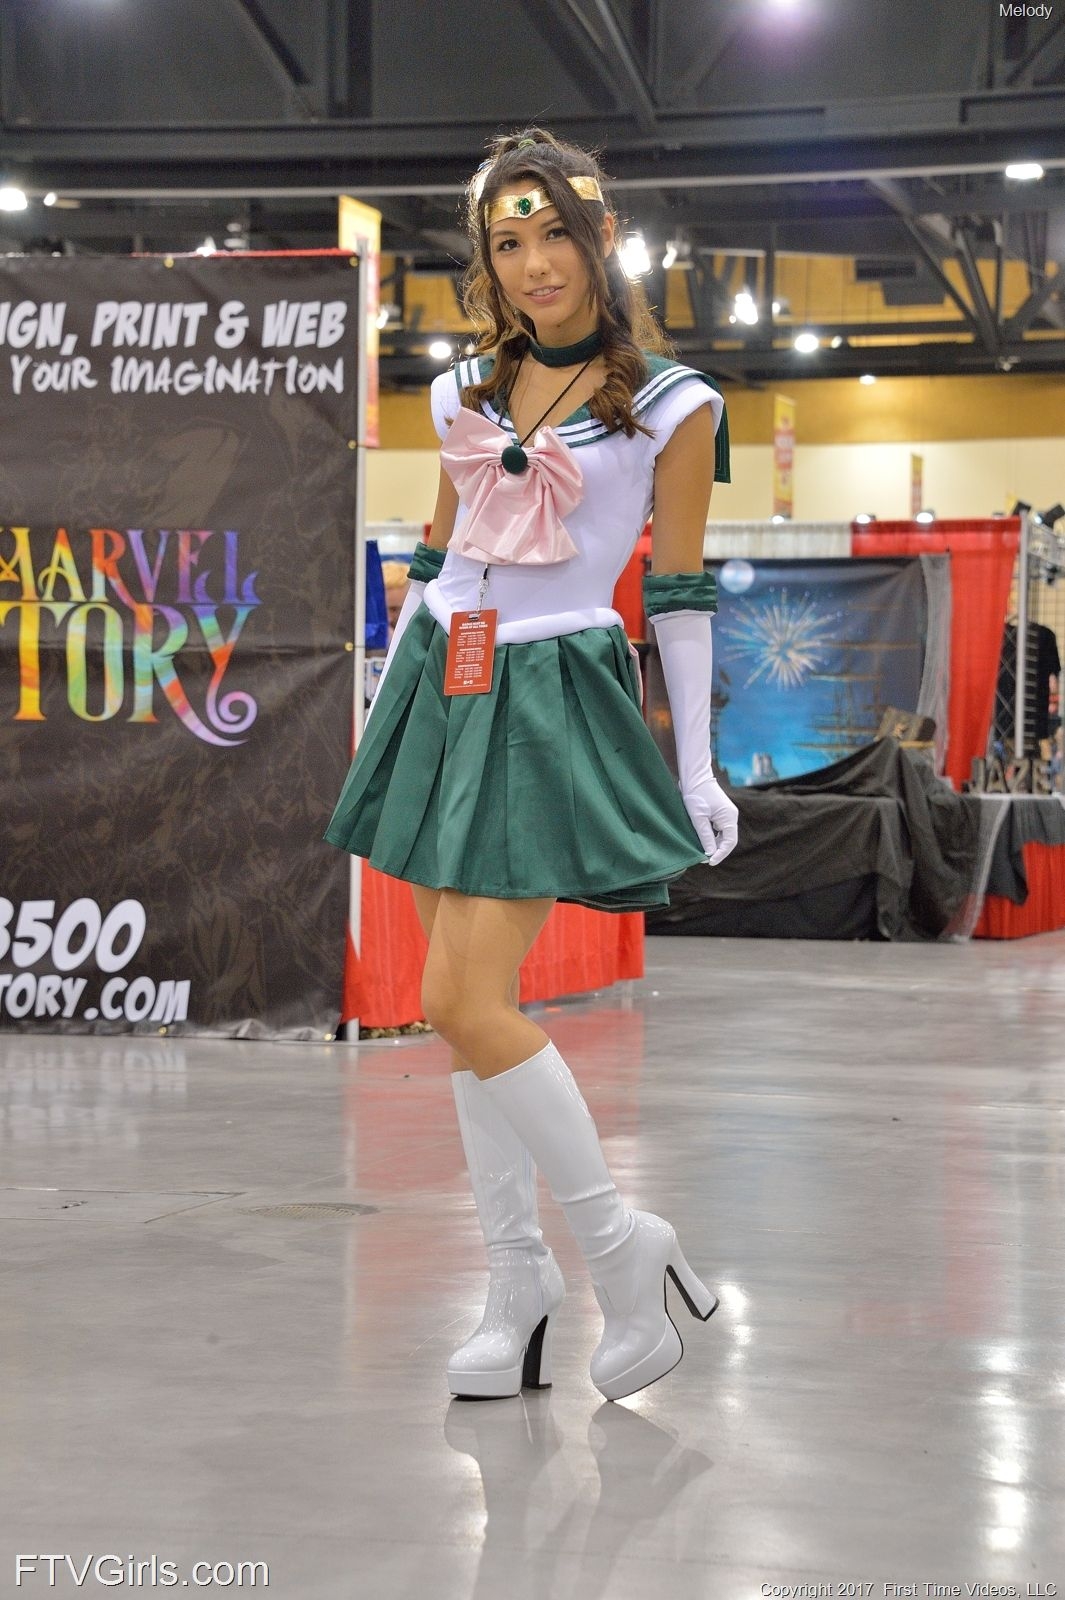 Melody Wylde as Sailor Jupiter 103